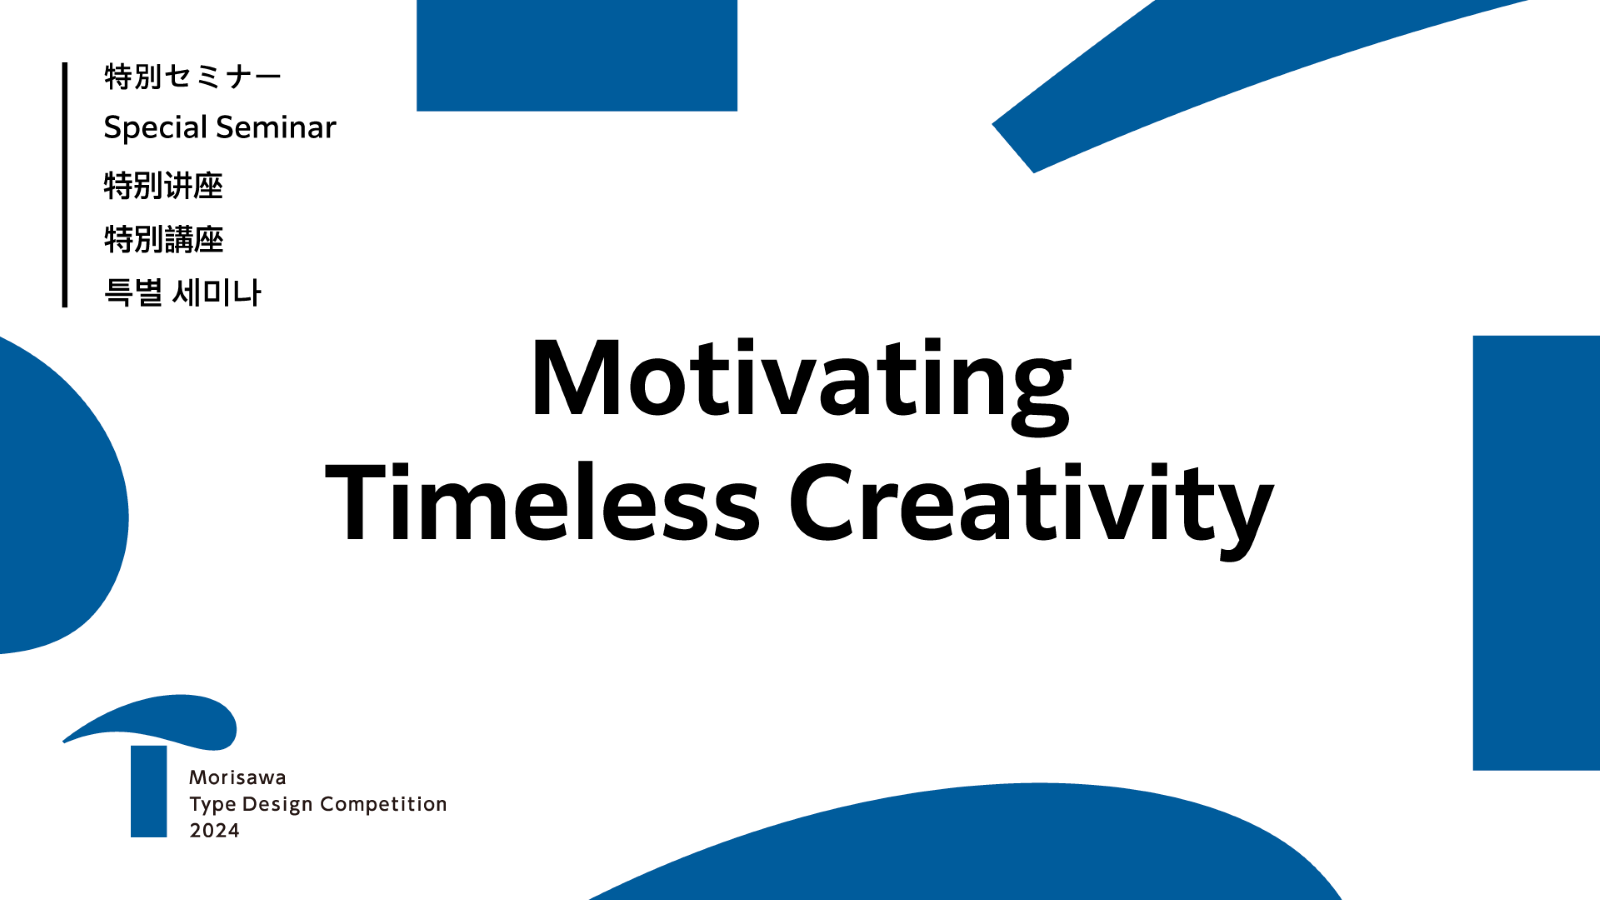 オンライン特別セミナー「Motivating Timeless Creativity」を本日より公開